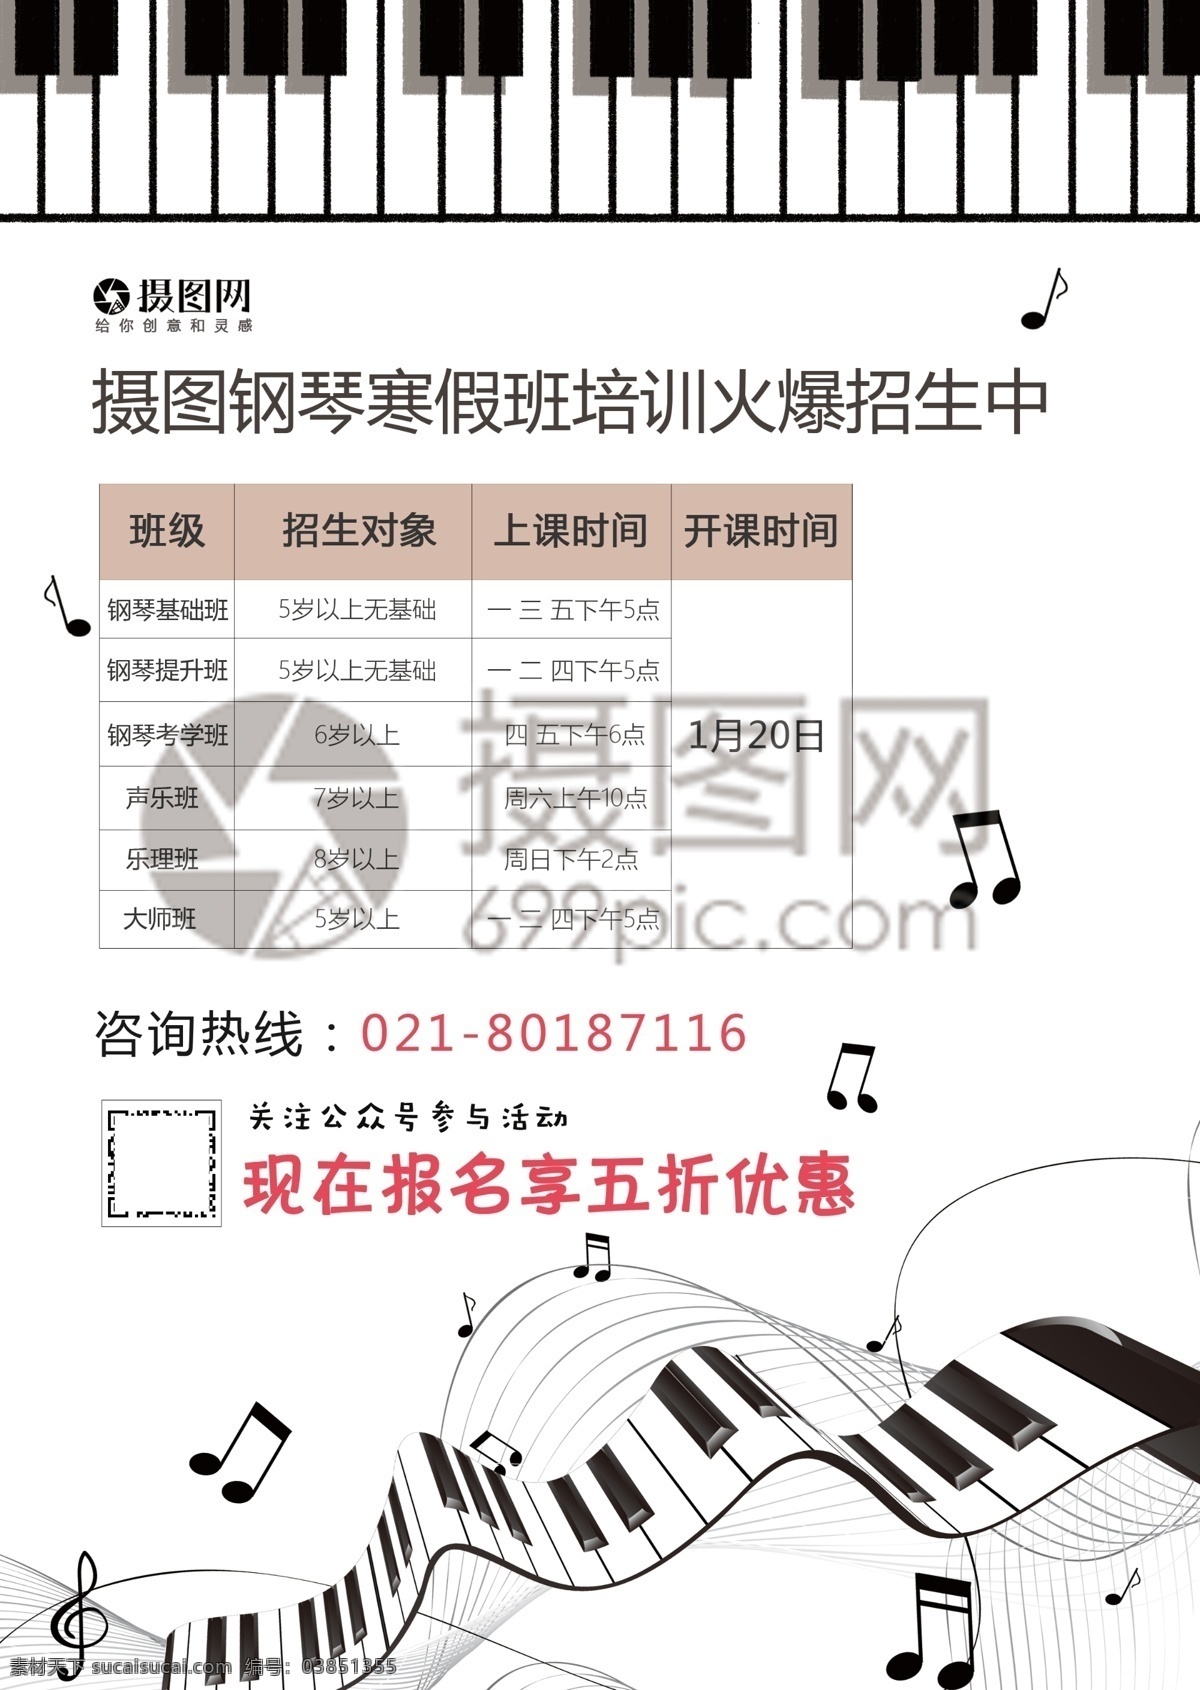 钢琴 培训 宣传单 音乐 艺术 乐器 教育 寒假 招生宣传 宣传单设计 简约 简洁 大气